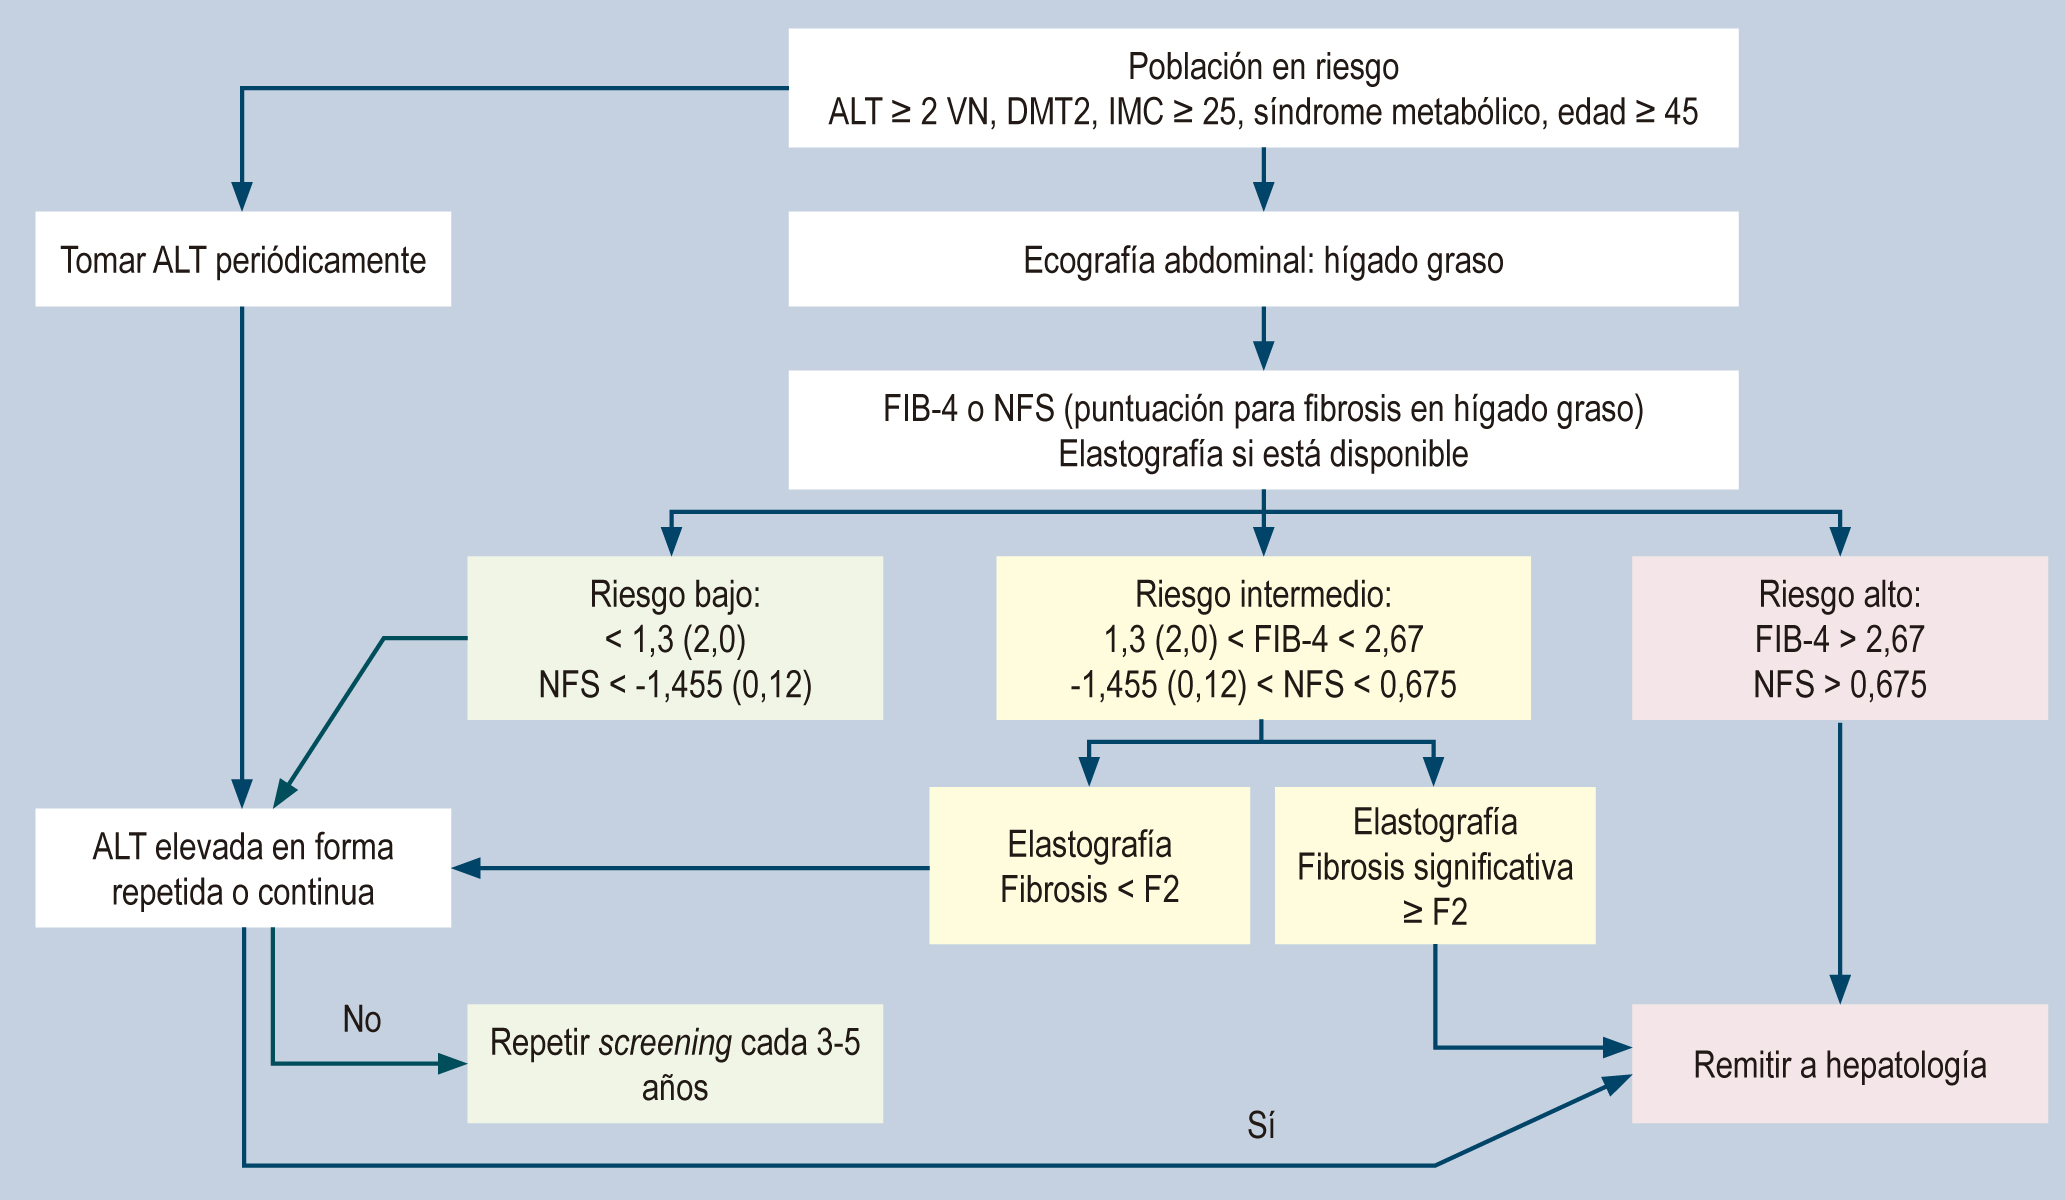 Figura 1. Algoritmo de riesgo hepático en hígado graso(51). DMT2: diabetes mellitus tipo 2; VN: valor normal. Modificado de: Dietrich CG et al. World J Gastroenterol. 2021;27(35):5803-5821.